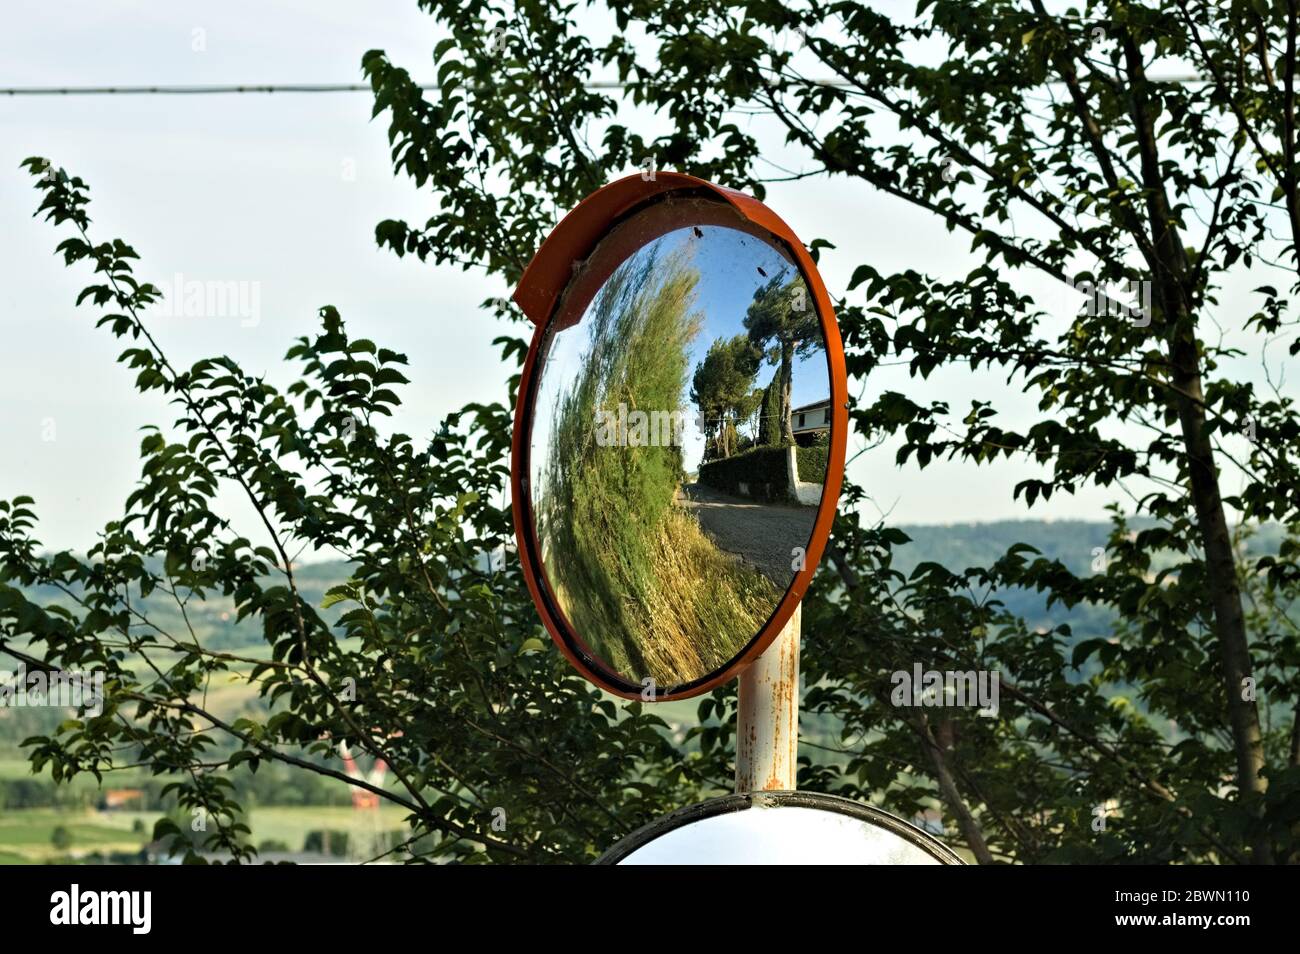 Specchio Parabolico Immagini e Fotos Stock - Alamy